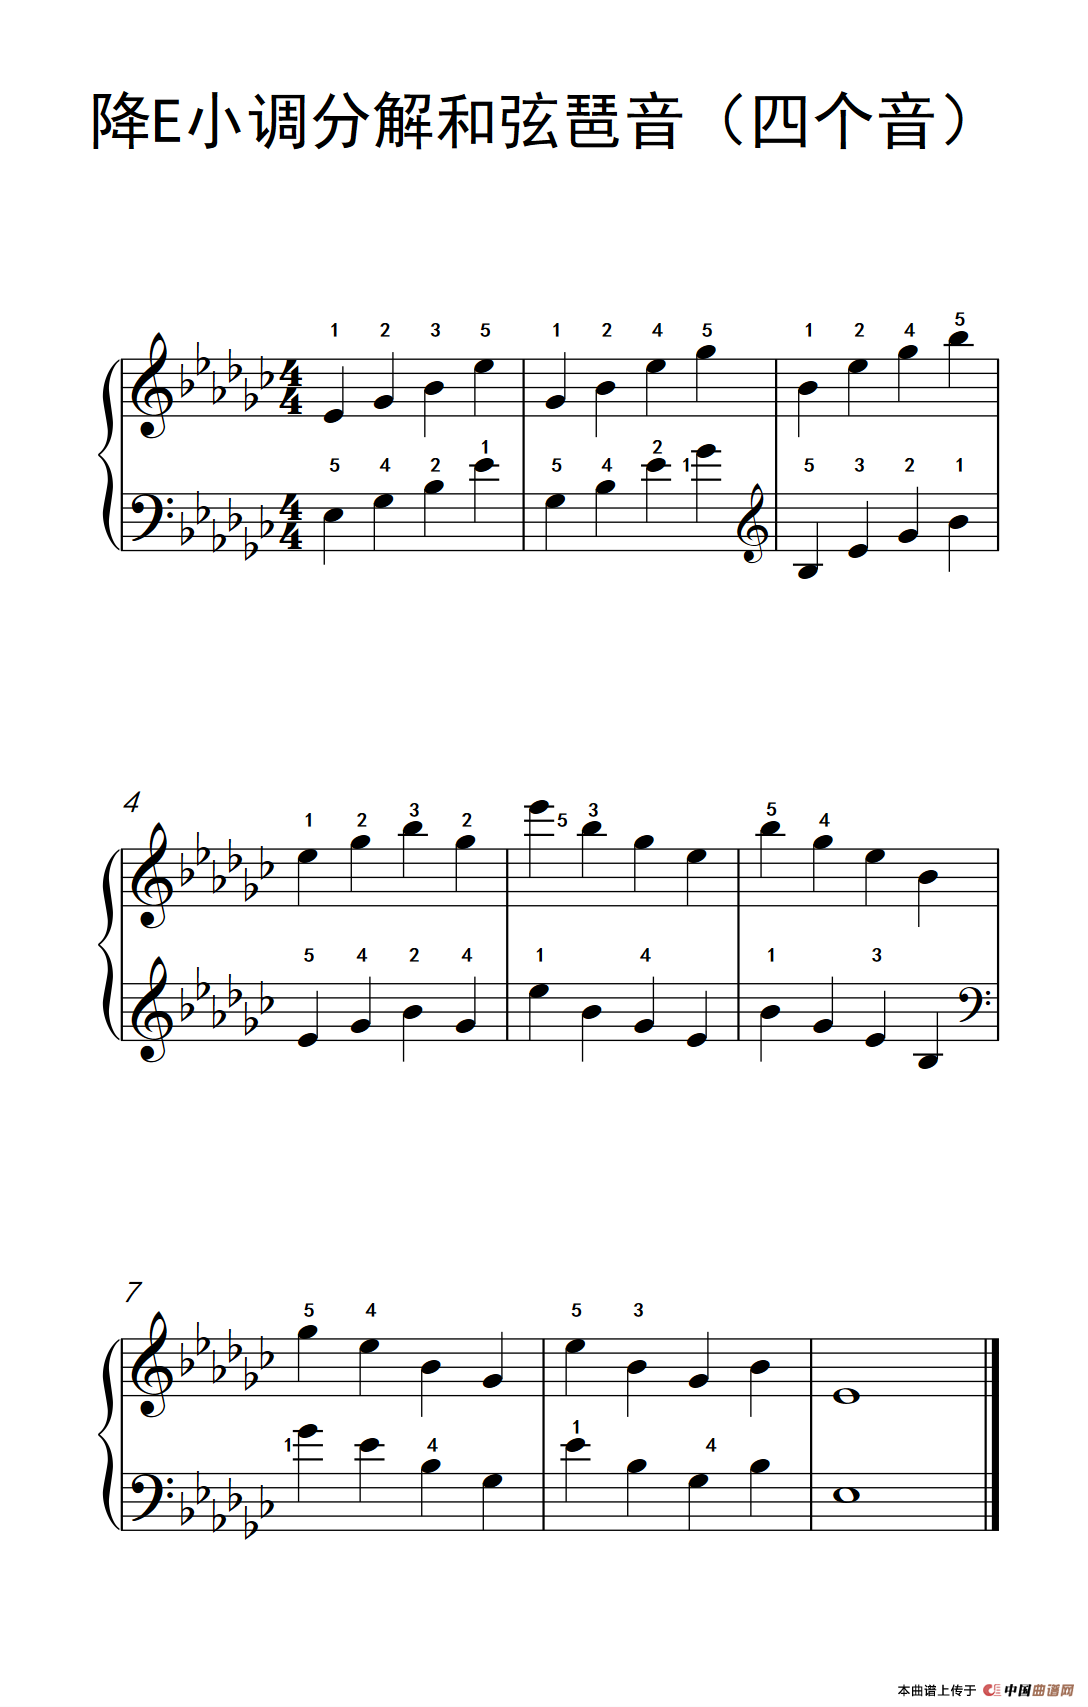 《降E小调分解和弦琶音》钢琴曲谱图分享